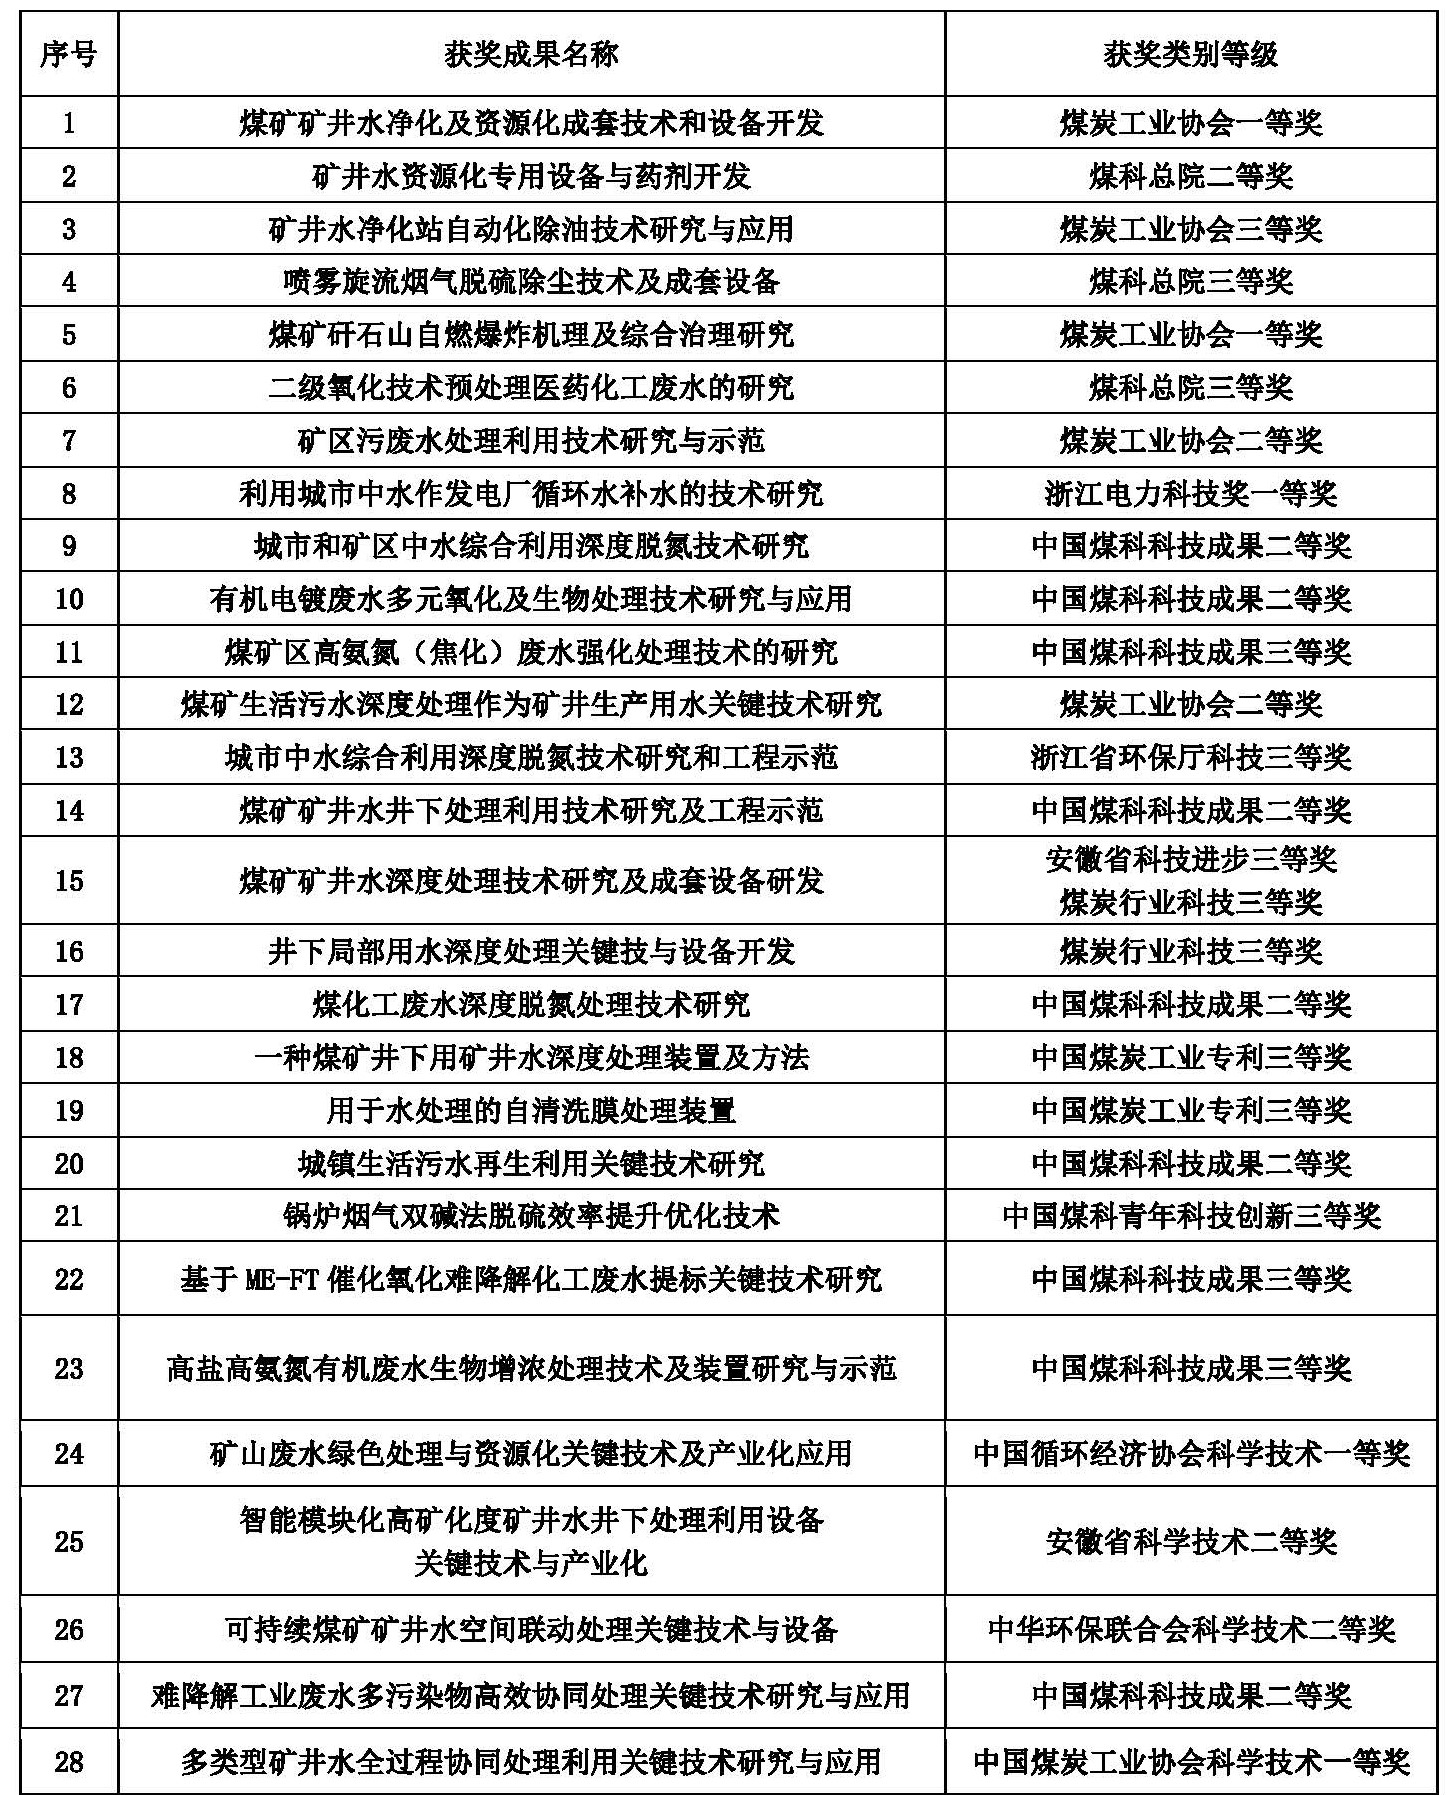 中国煤科杭州研究院科研成果总表（2001-2022）.jpg